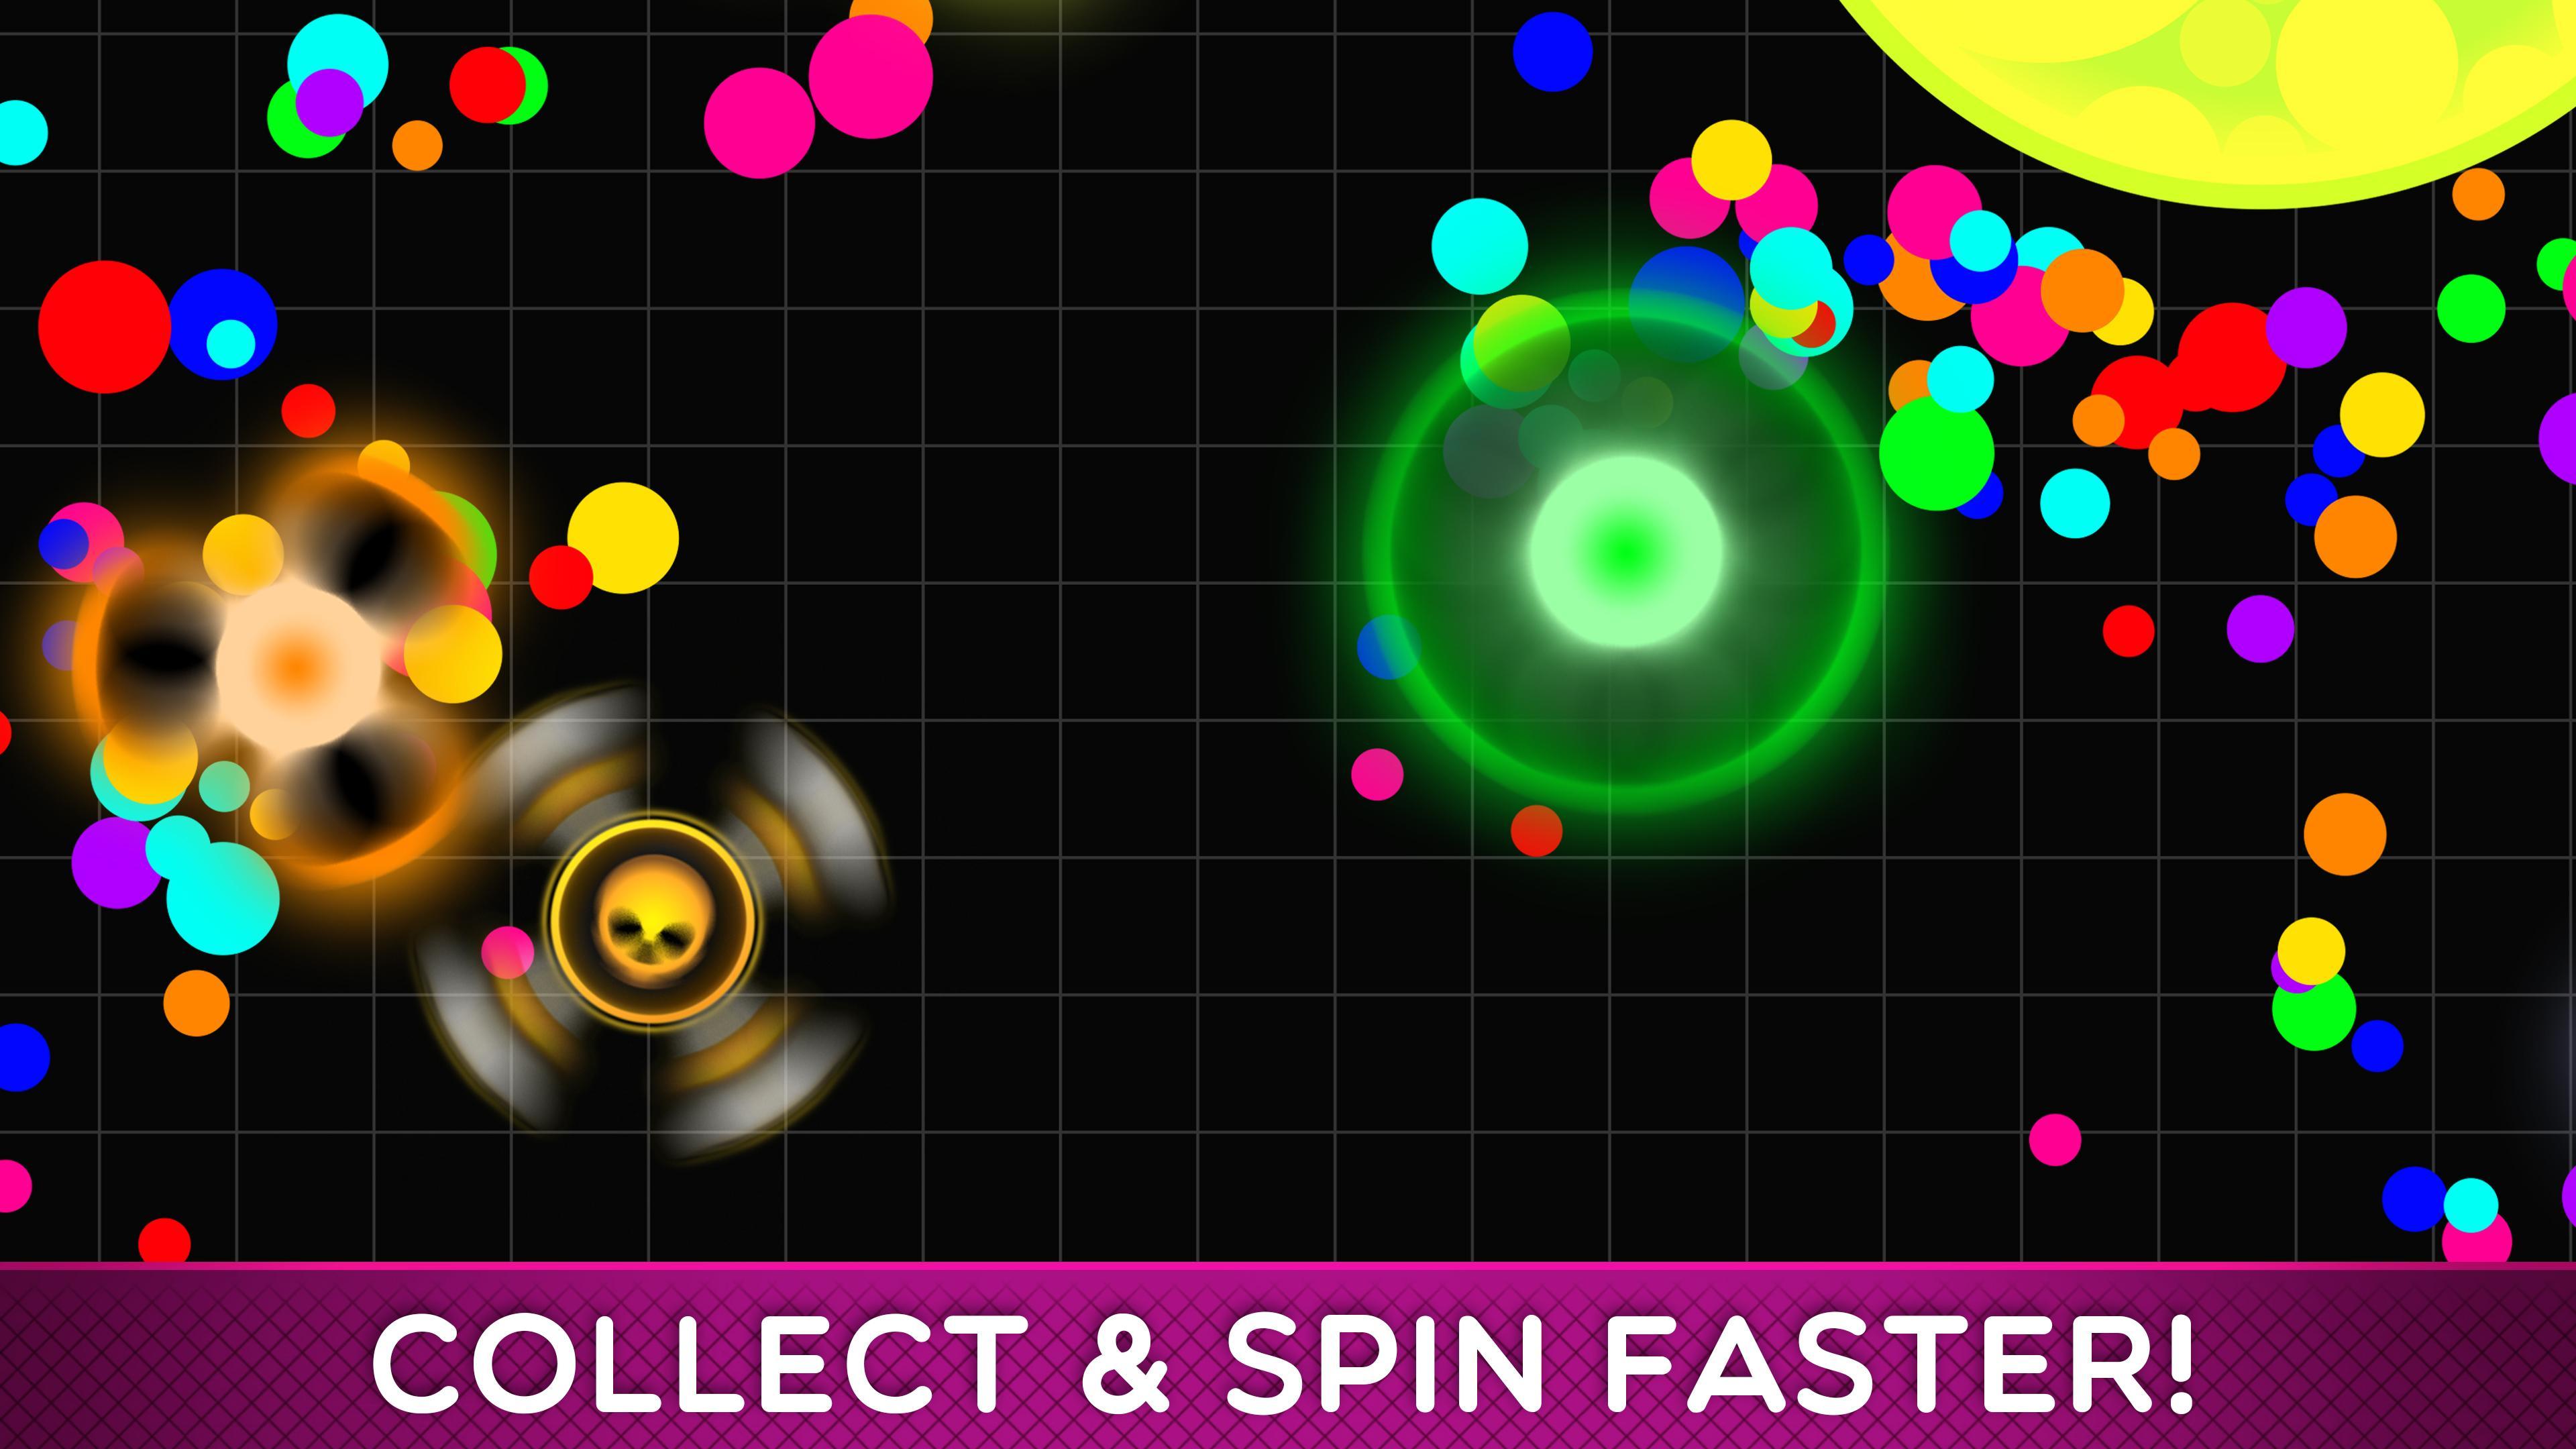 Fisp.io Spins Master of Fidget Spinner遊戲截圖